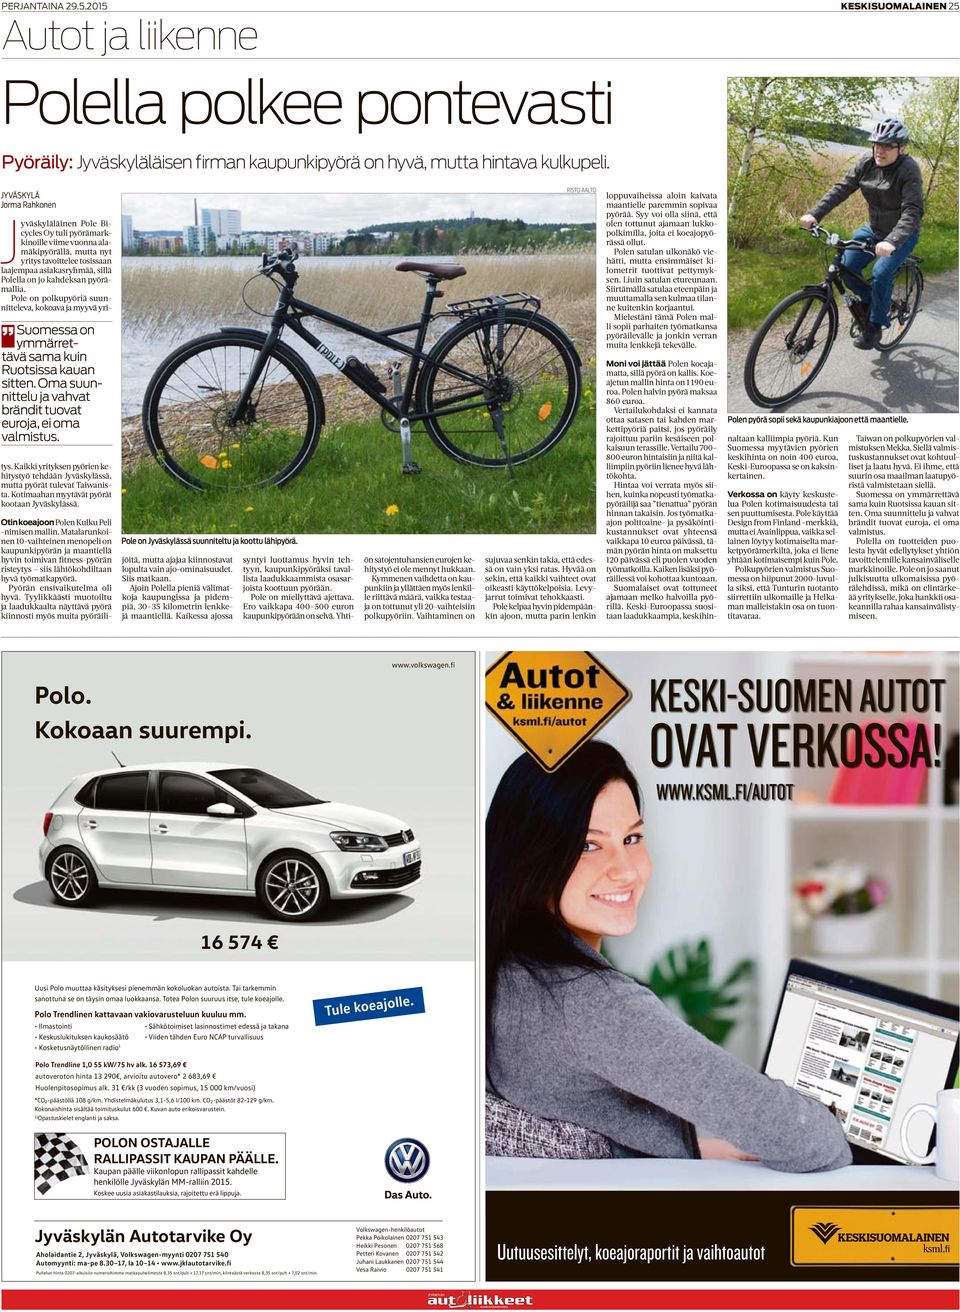 kahdeksan pyörämallia. Pole on polkupyöriä suunnitteleva, kokoava ja myyvä yri- Suomessa on ymmärrettävä sama kuin Ruotsissa kauan sitten.